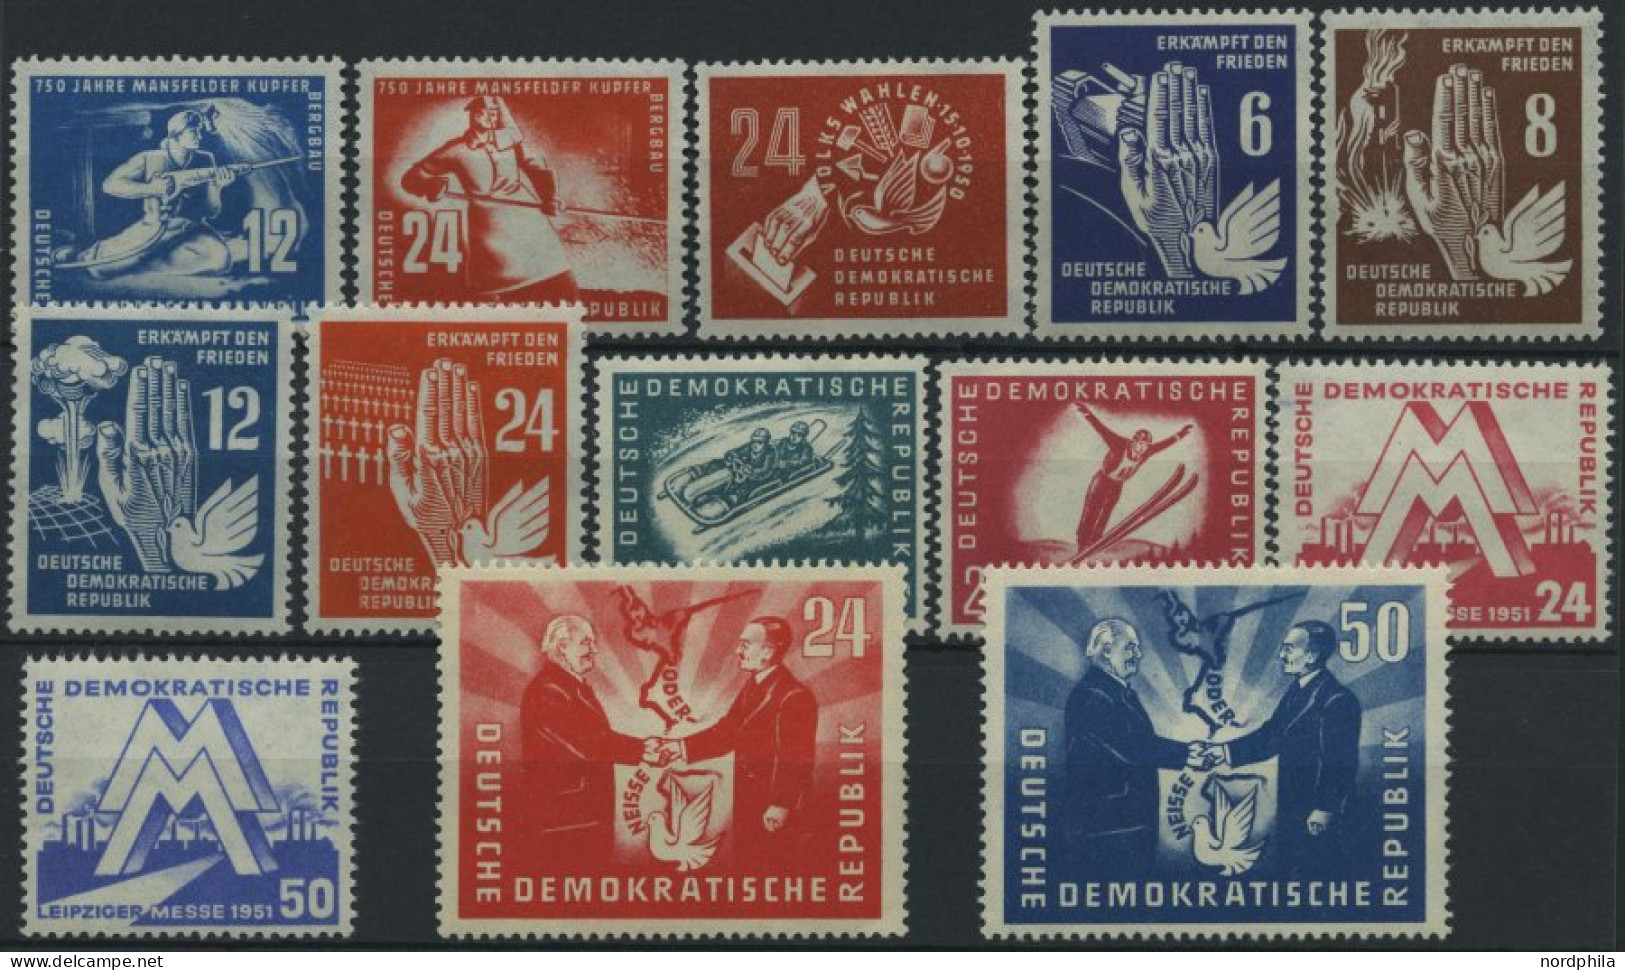 DDR 273-85 **, 1950/1, 13 Prachtwerte, Mi. 146.- - Used Stamps